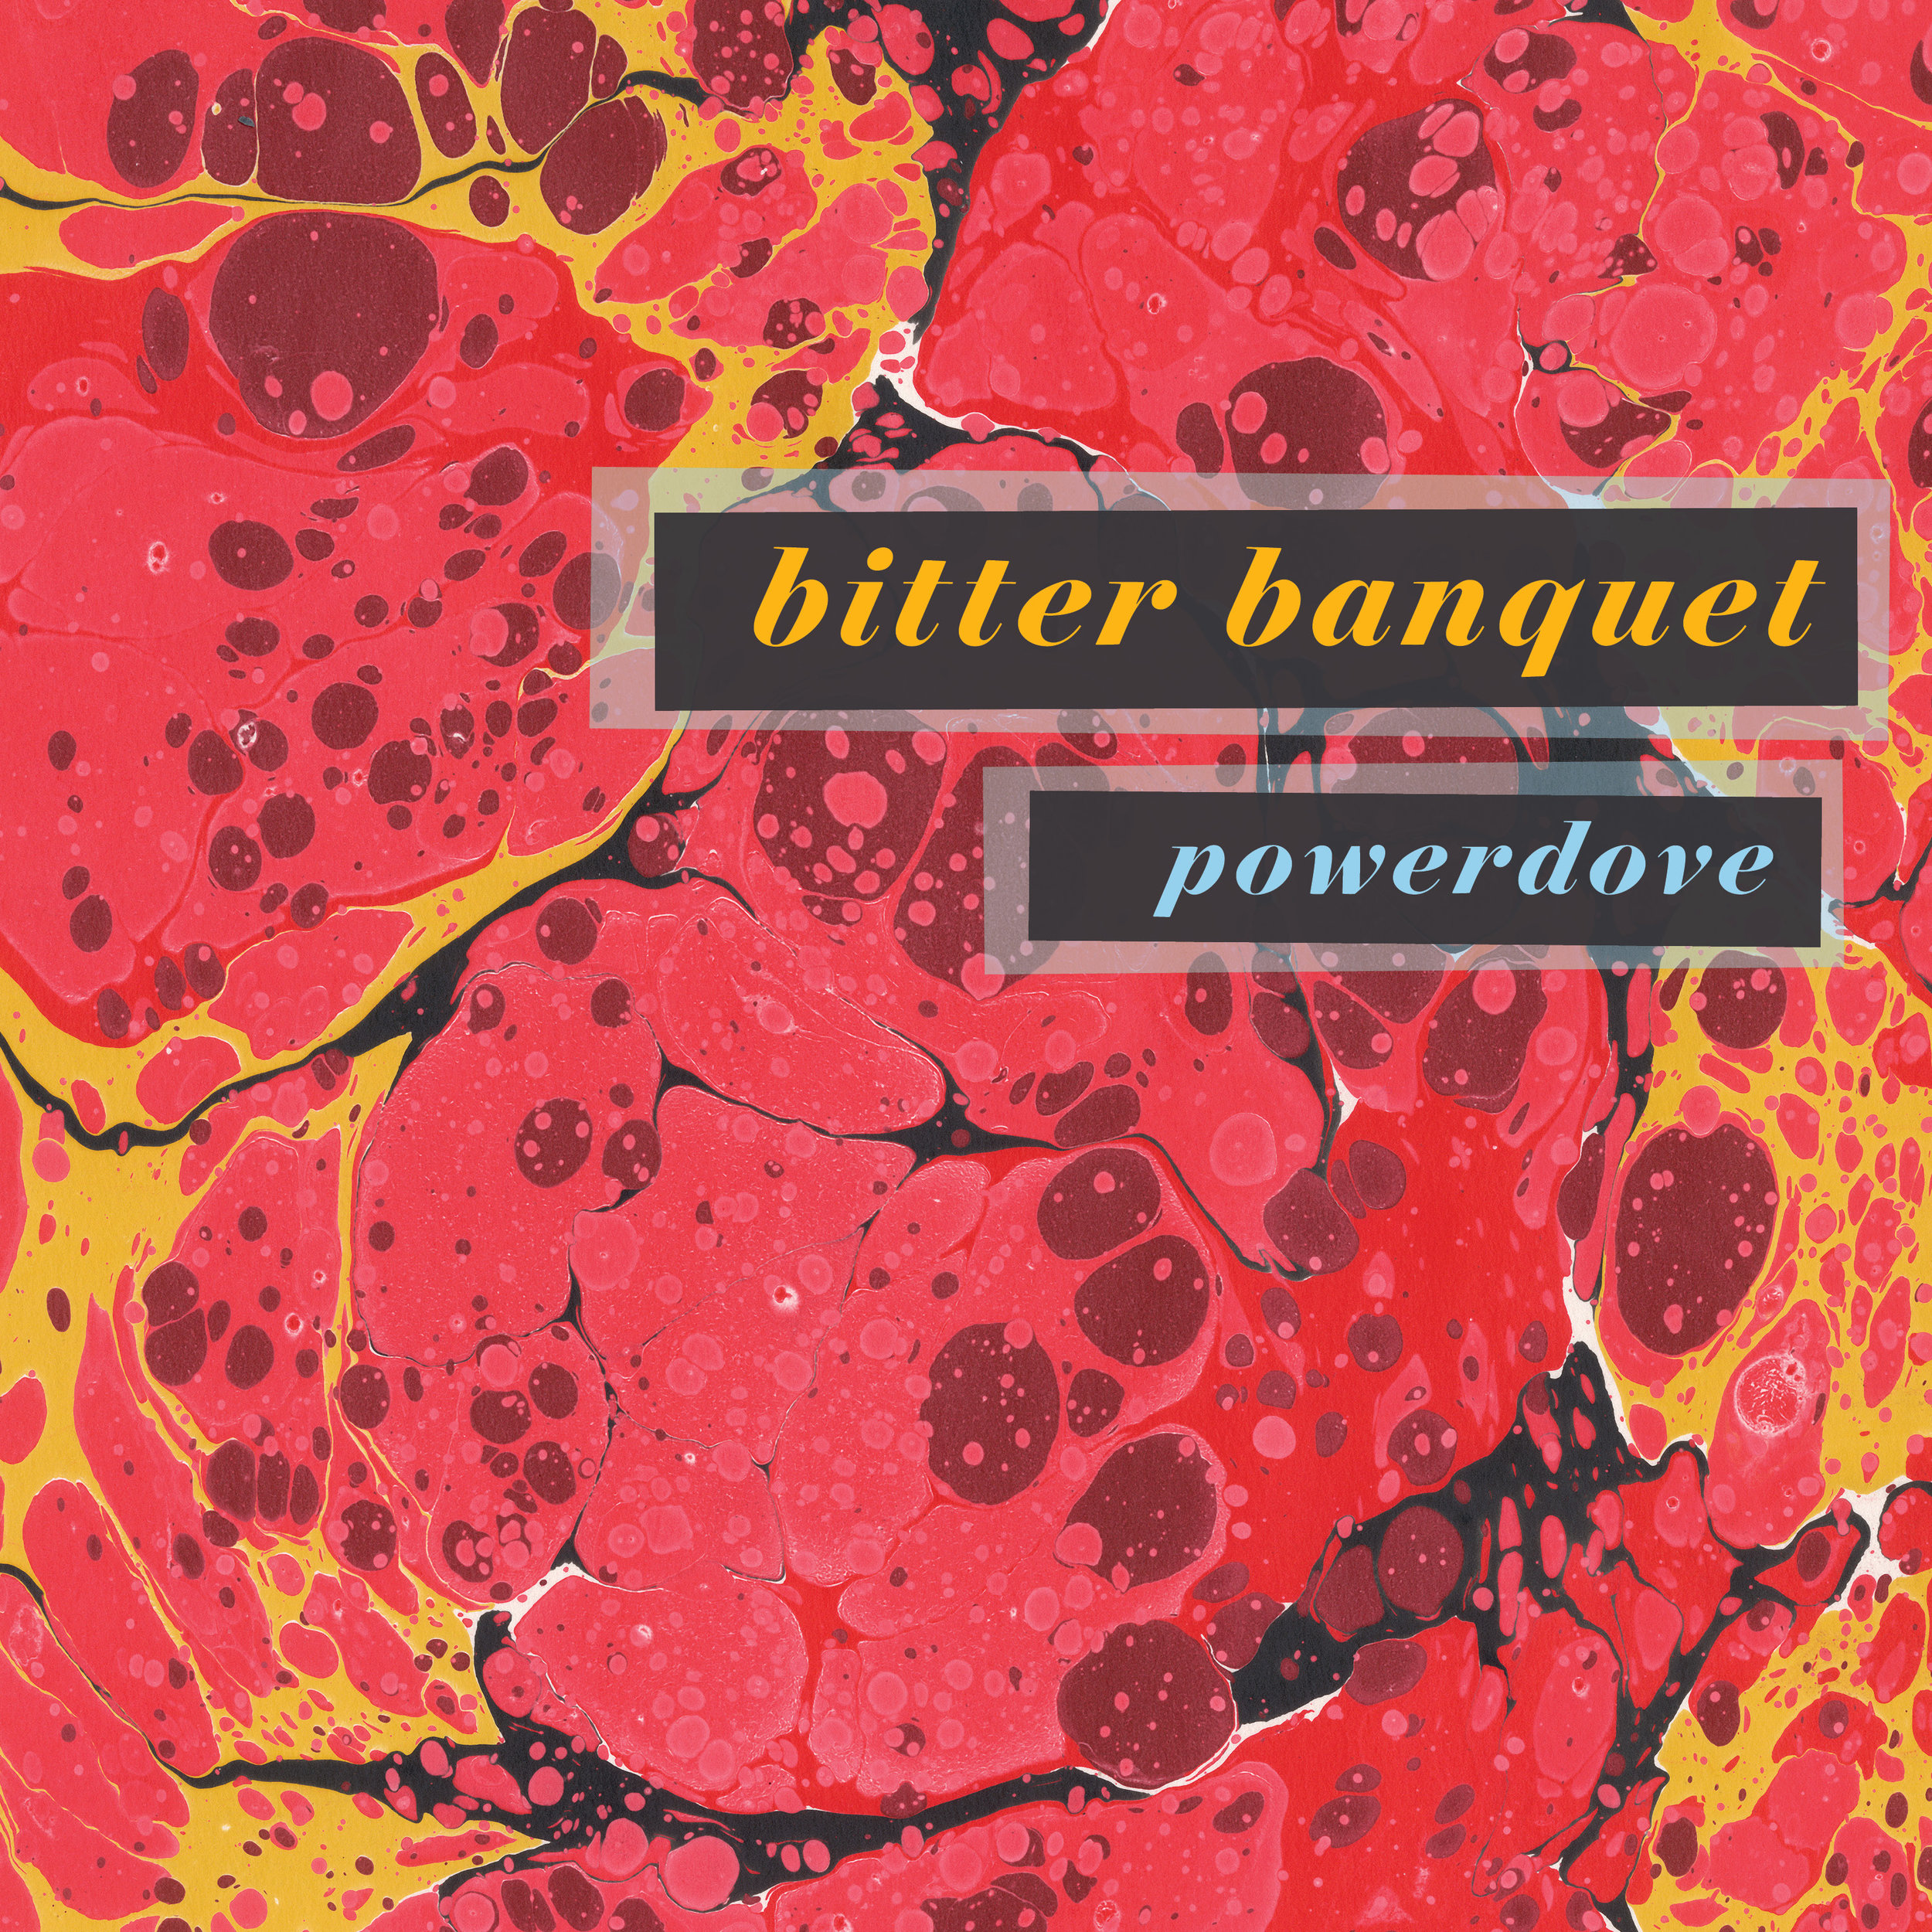 Copy of powerdove - bitter banquet